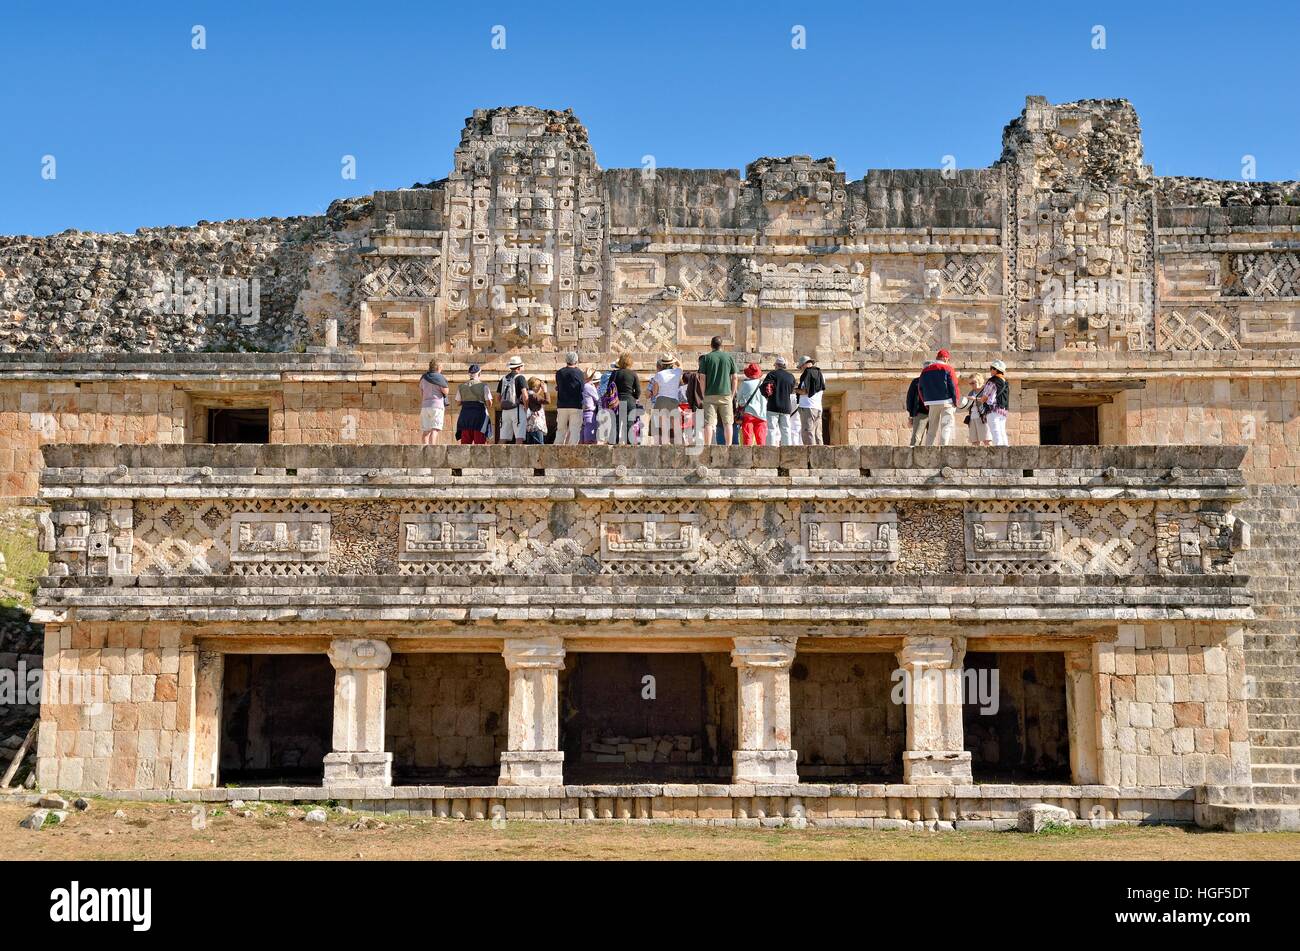 Los turistas de Cuadrangulo de las Monjas, Nun's Quadrangle, antigua ciudad maya de Uxmal, Yucatán, México Foto de stock